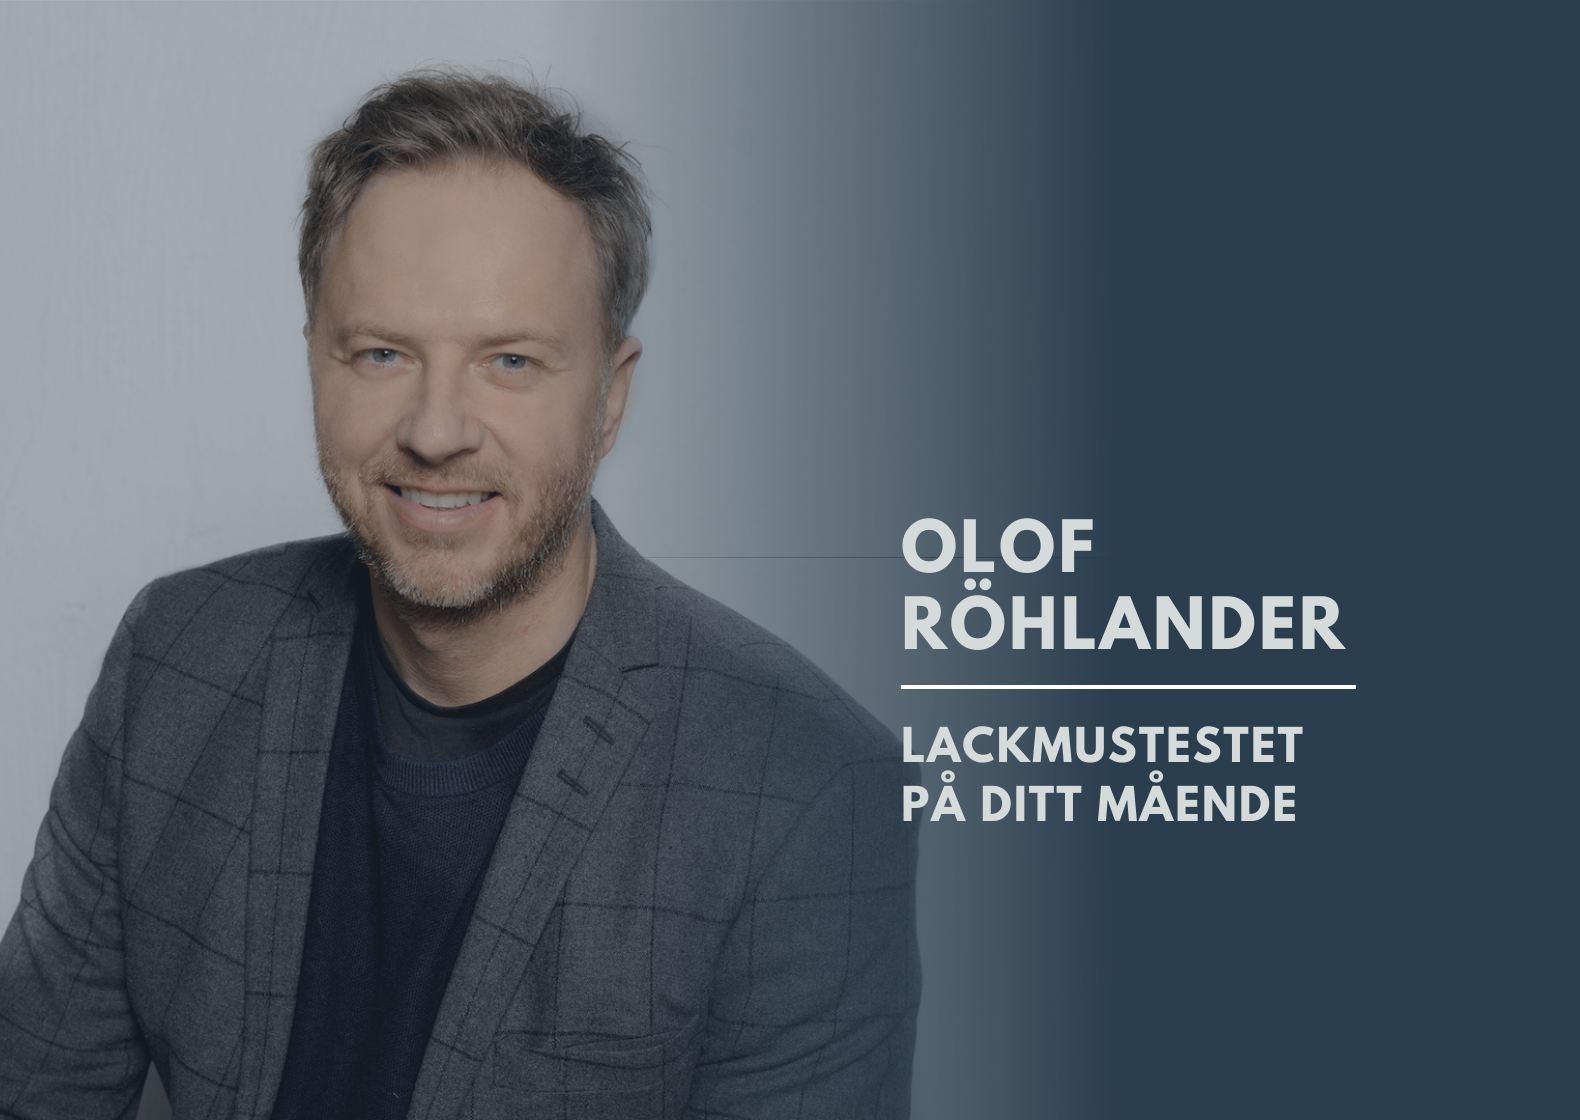 Lackmustestet på ditt mående av Olof Röhlander